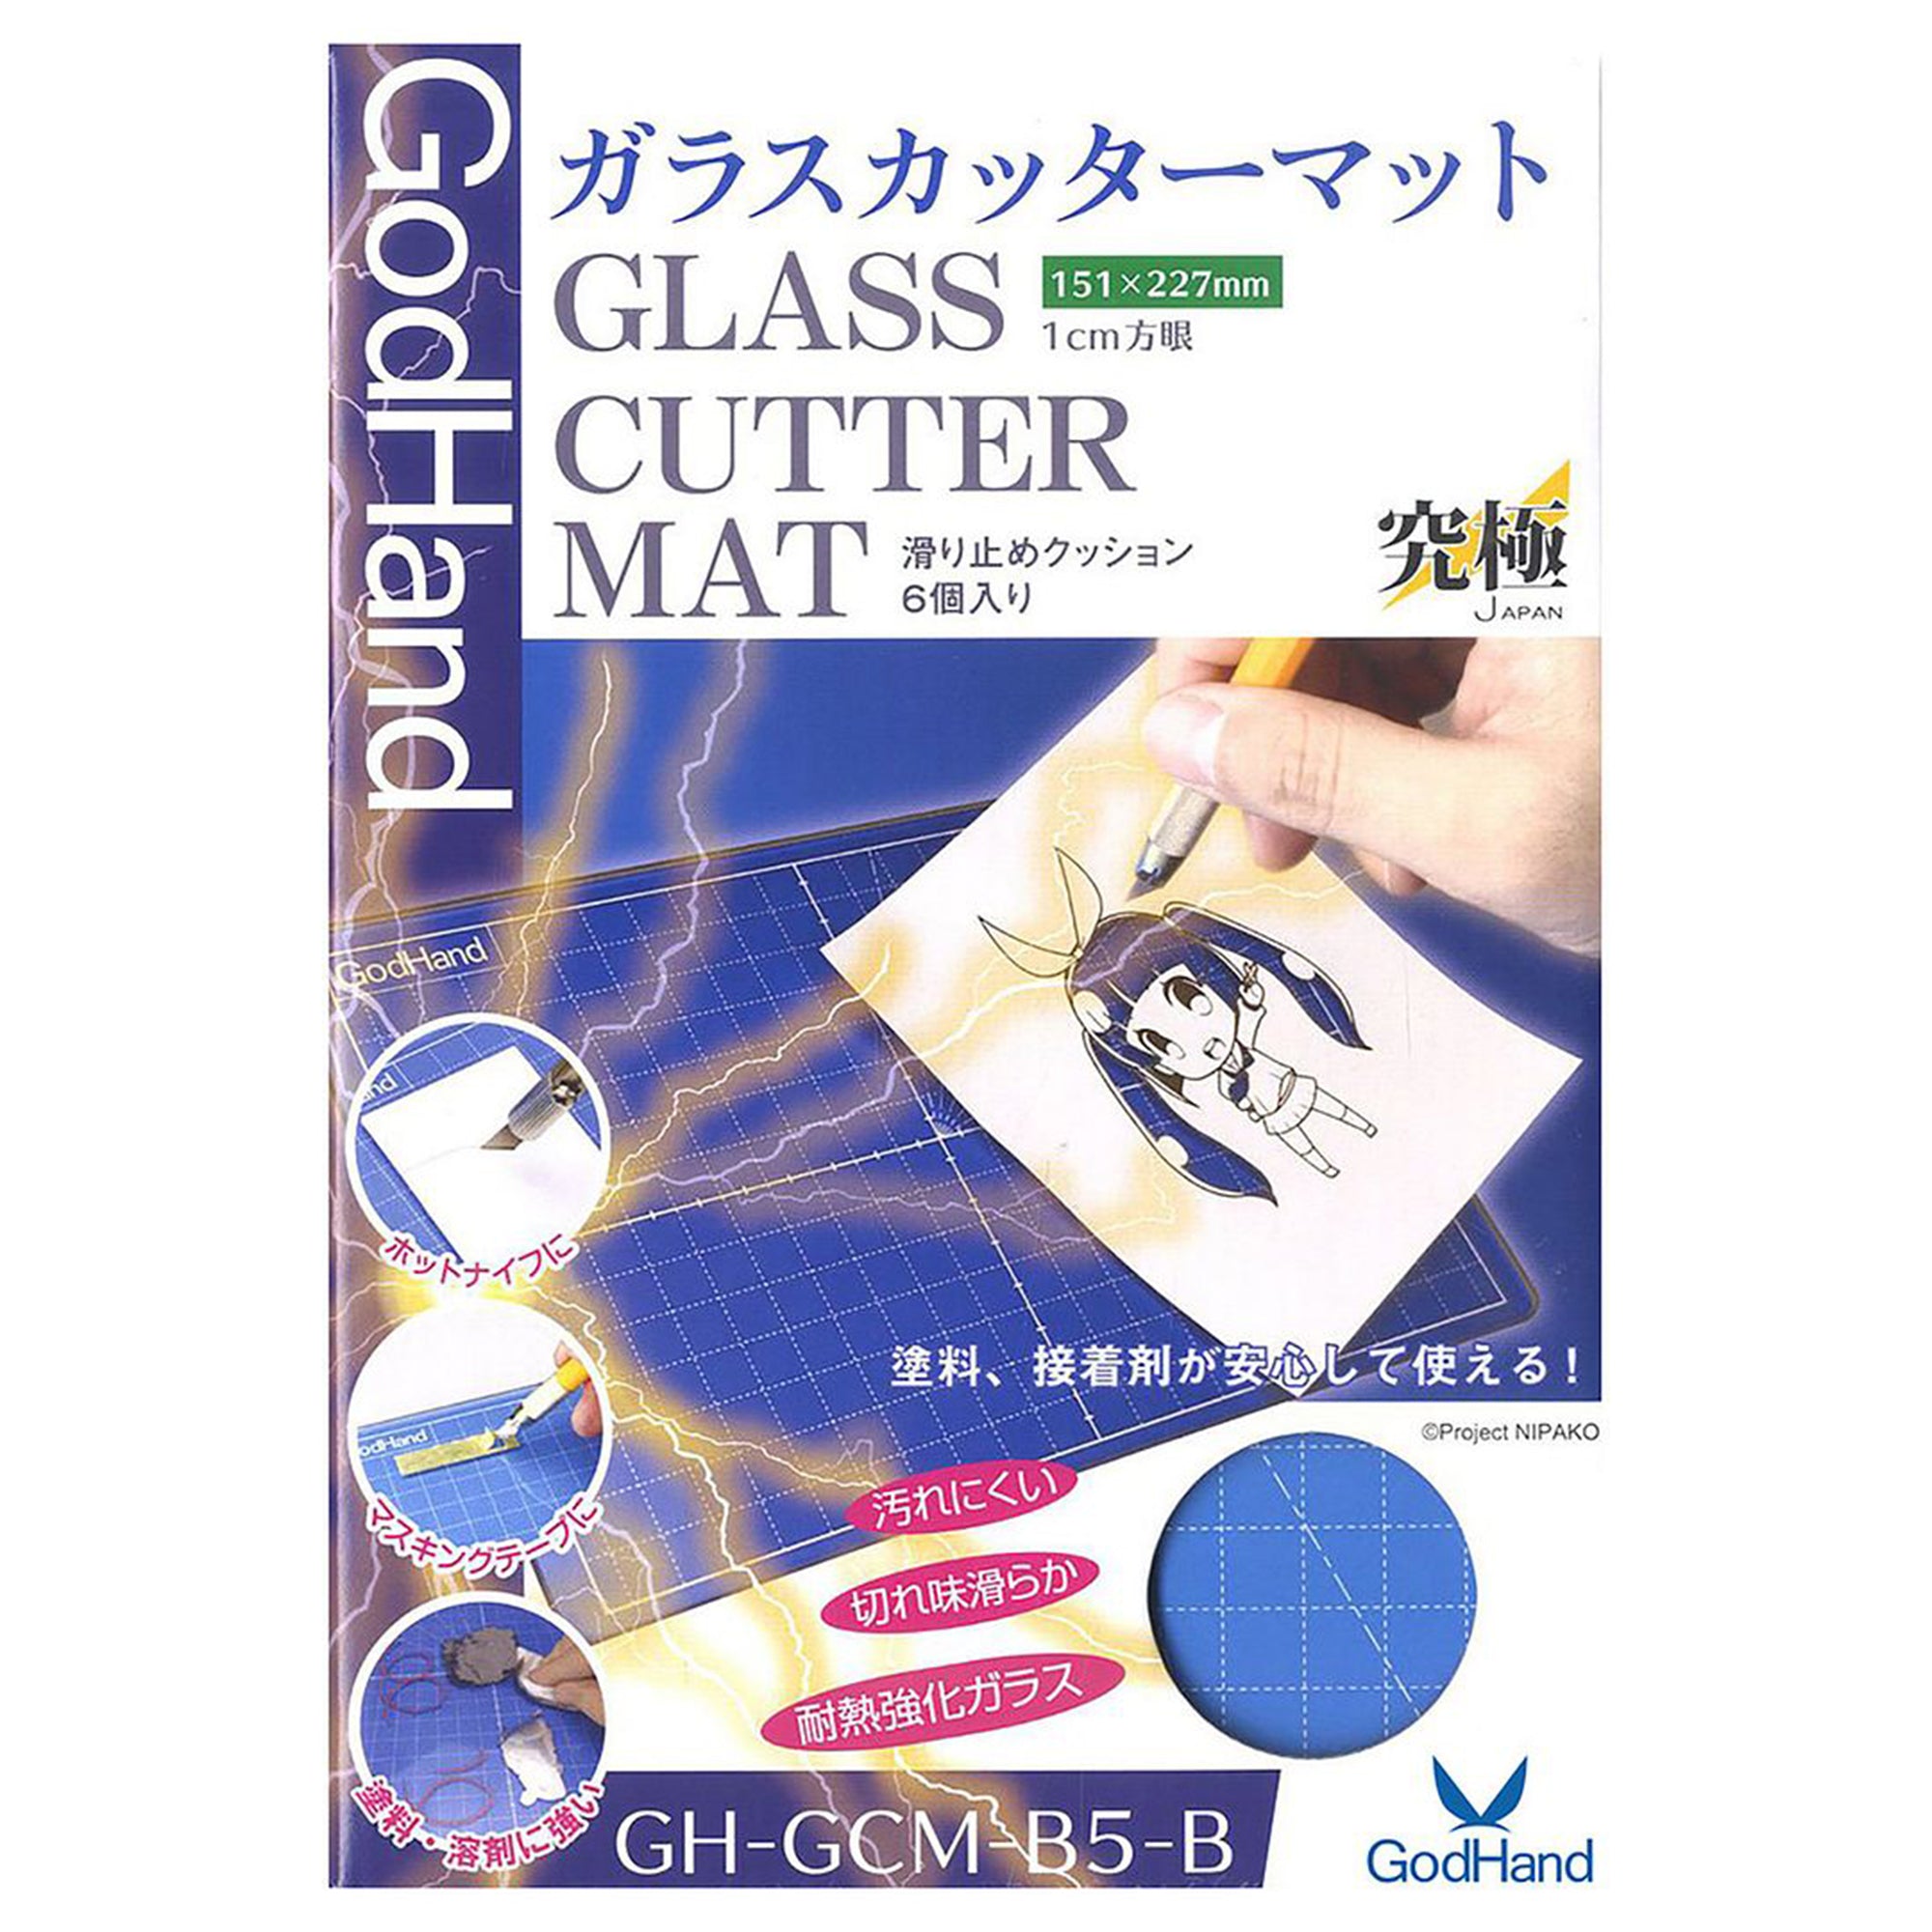 GodHand GH-GCM-B5-B Glass Cutter Mat - Tempered Glass Cutting Mat